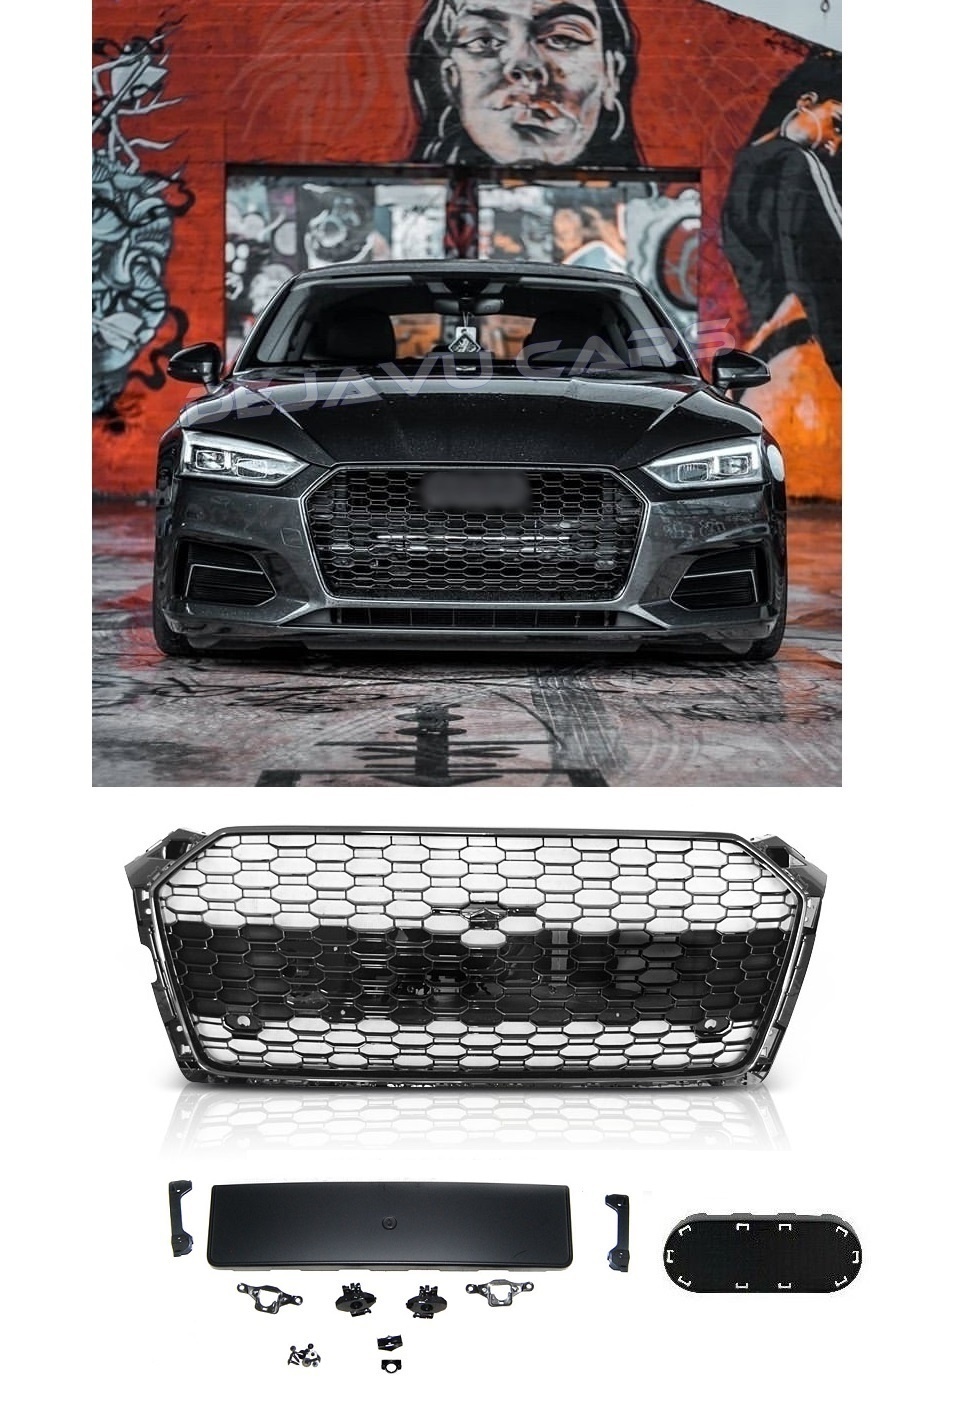 Bodykit für den Audi A4 B9 ohne Sline-Paket